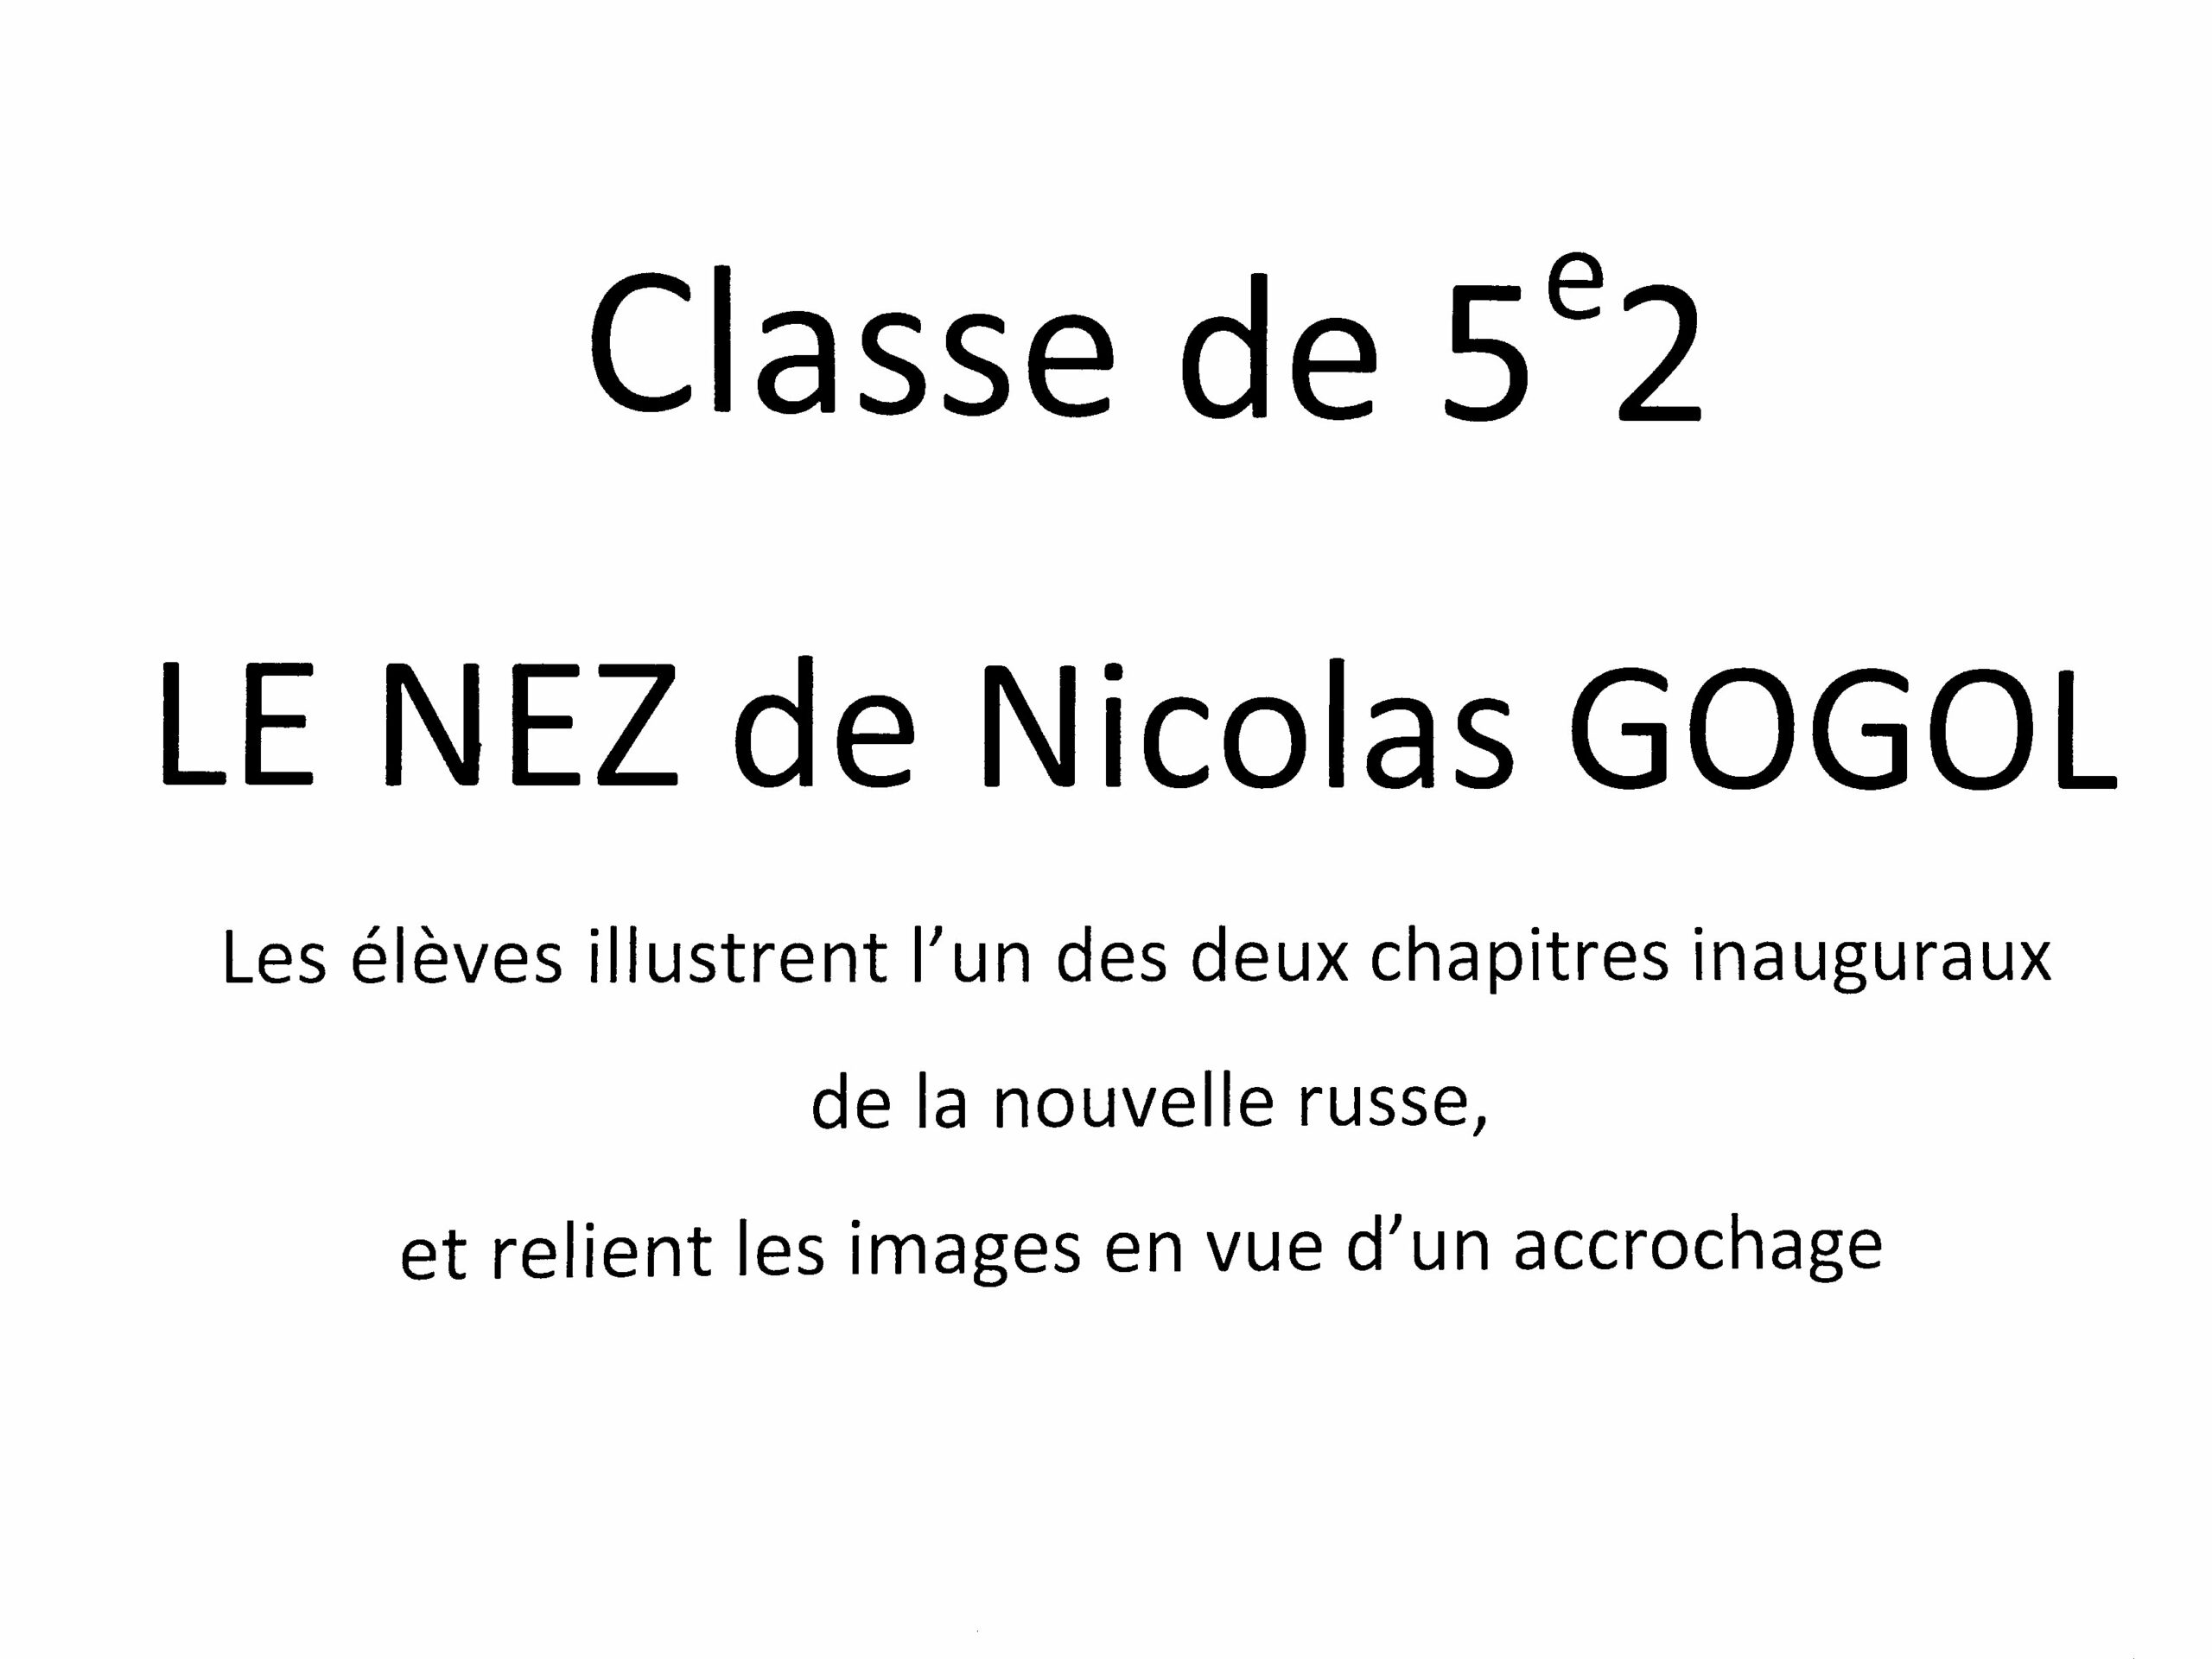 Le nez de Nicolas Gogol (5e2) (00)